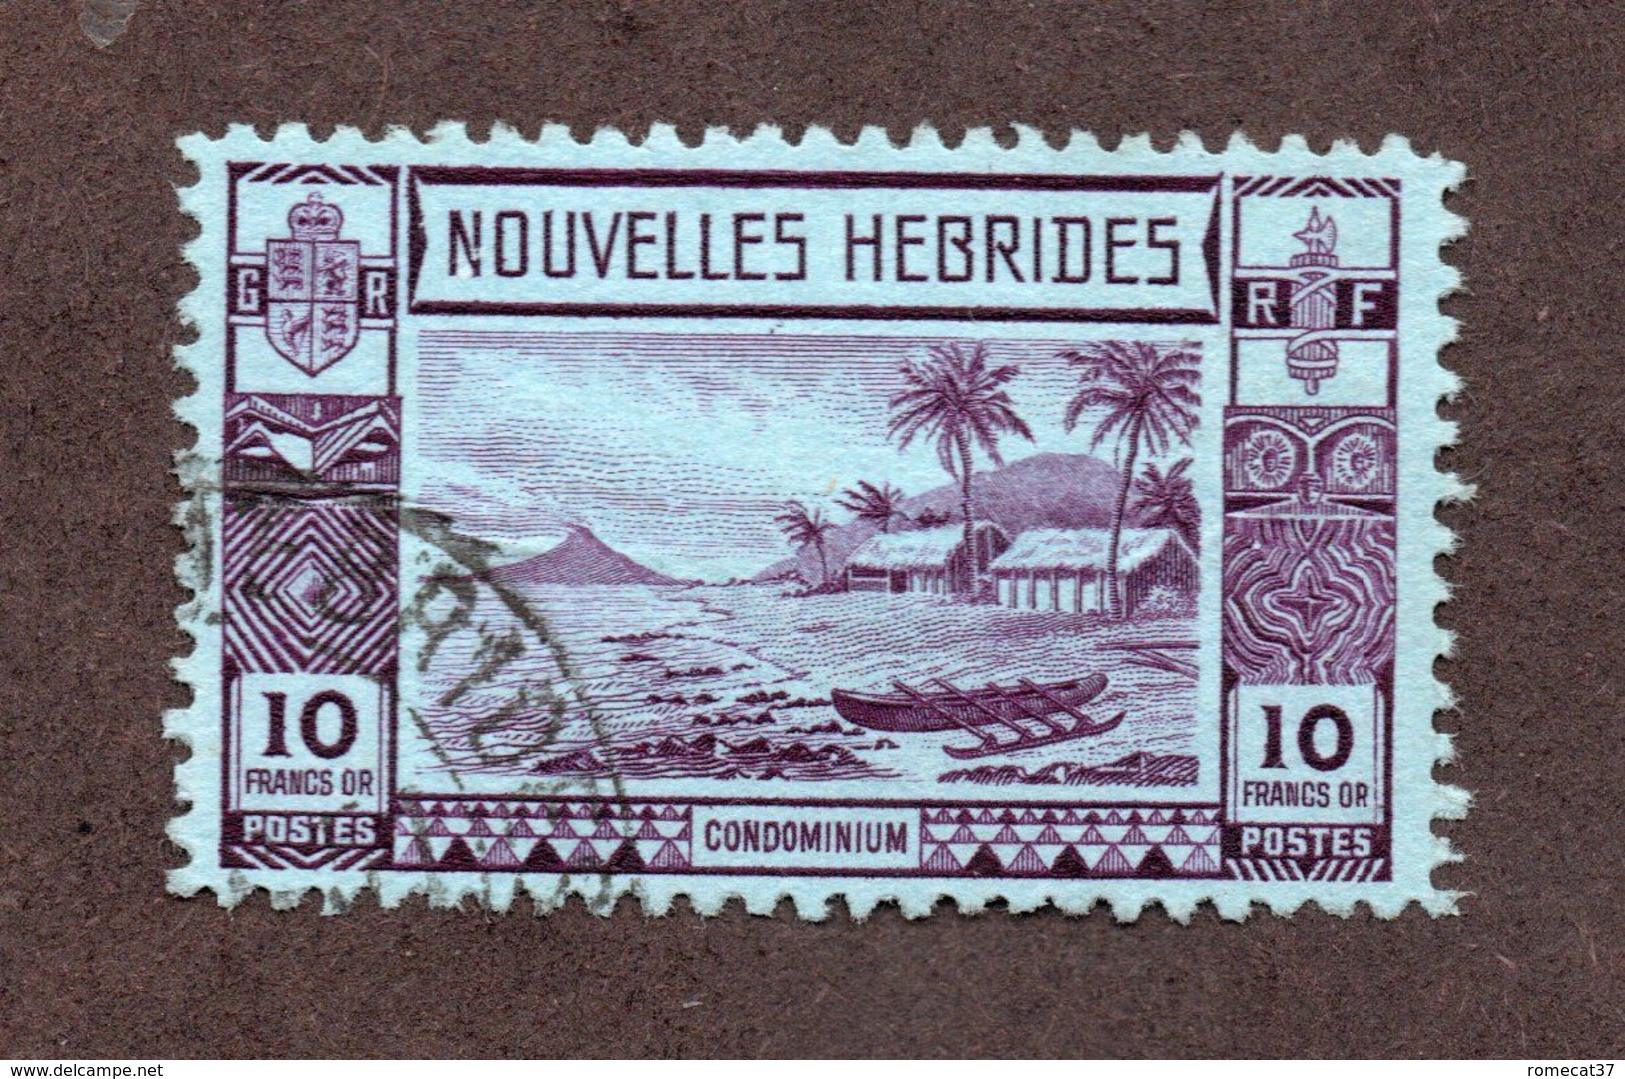 Nouvelles Hébrides N°111 Oblitéré TB Cote 65 Euros !!!RARE - Used Stamps